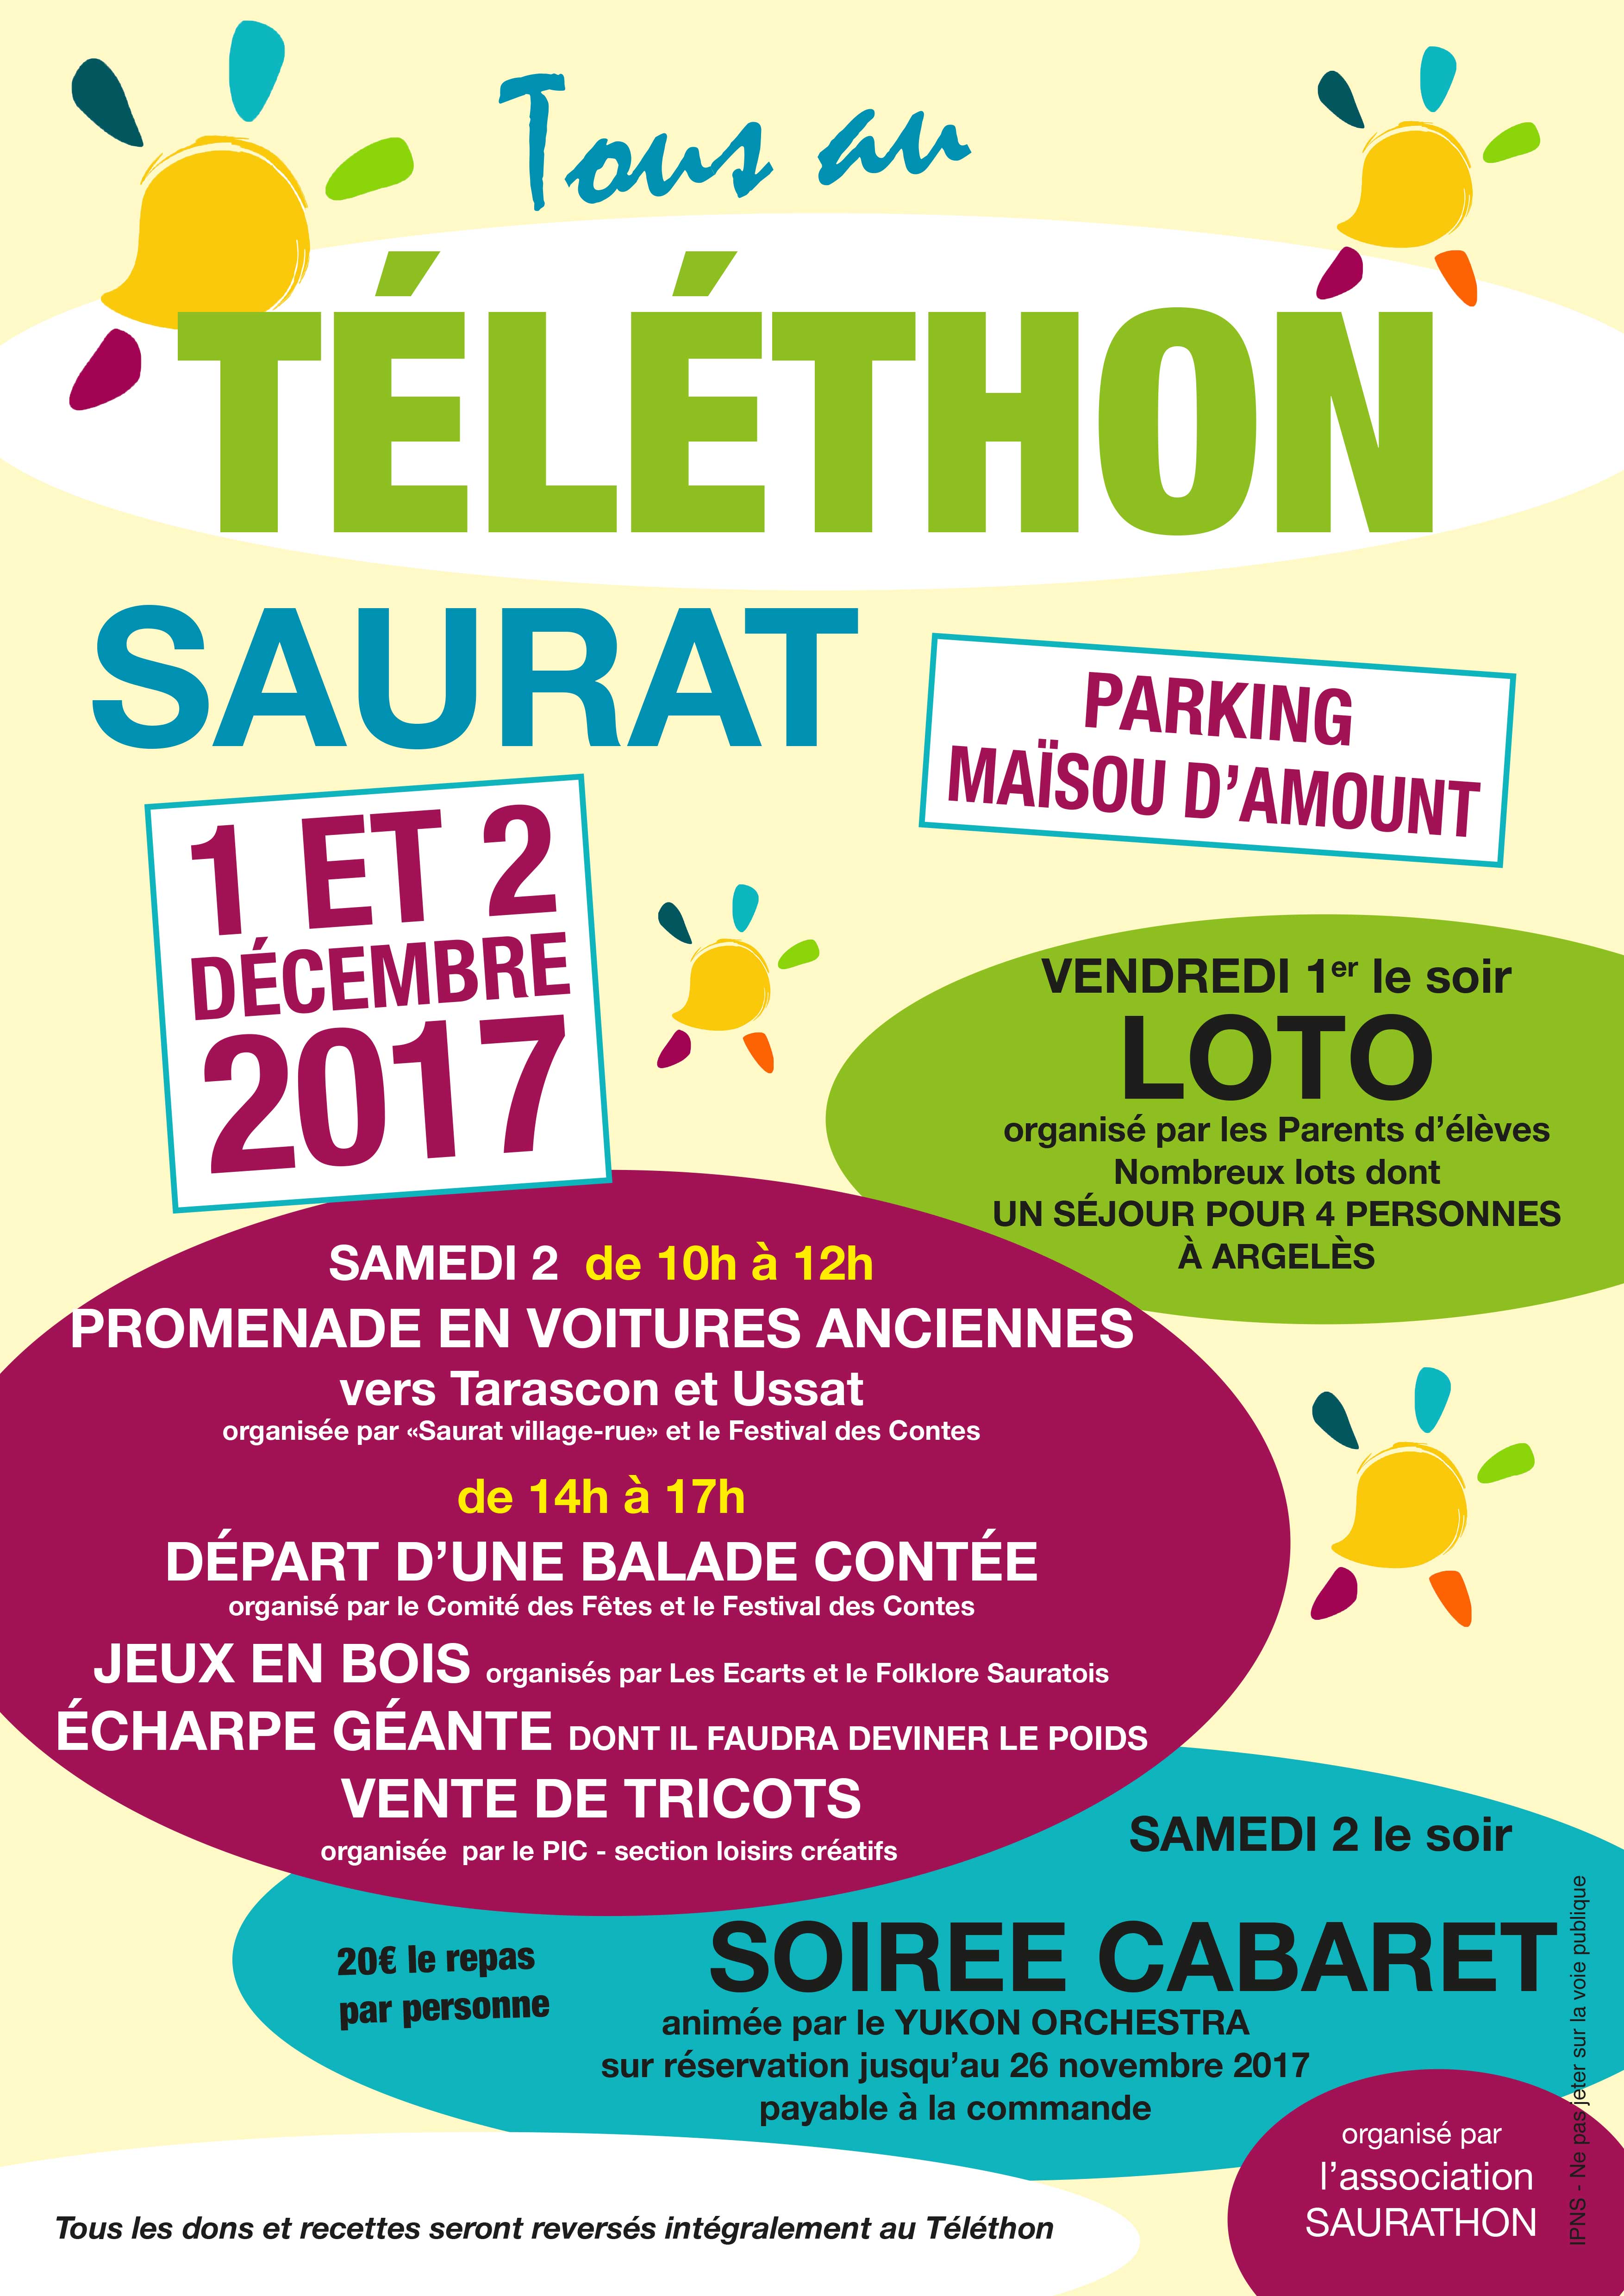 Téléthon Saurat 1 et 2 décembre 2017